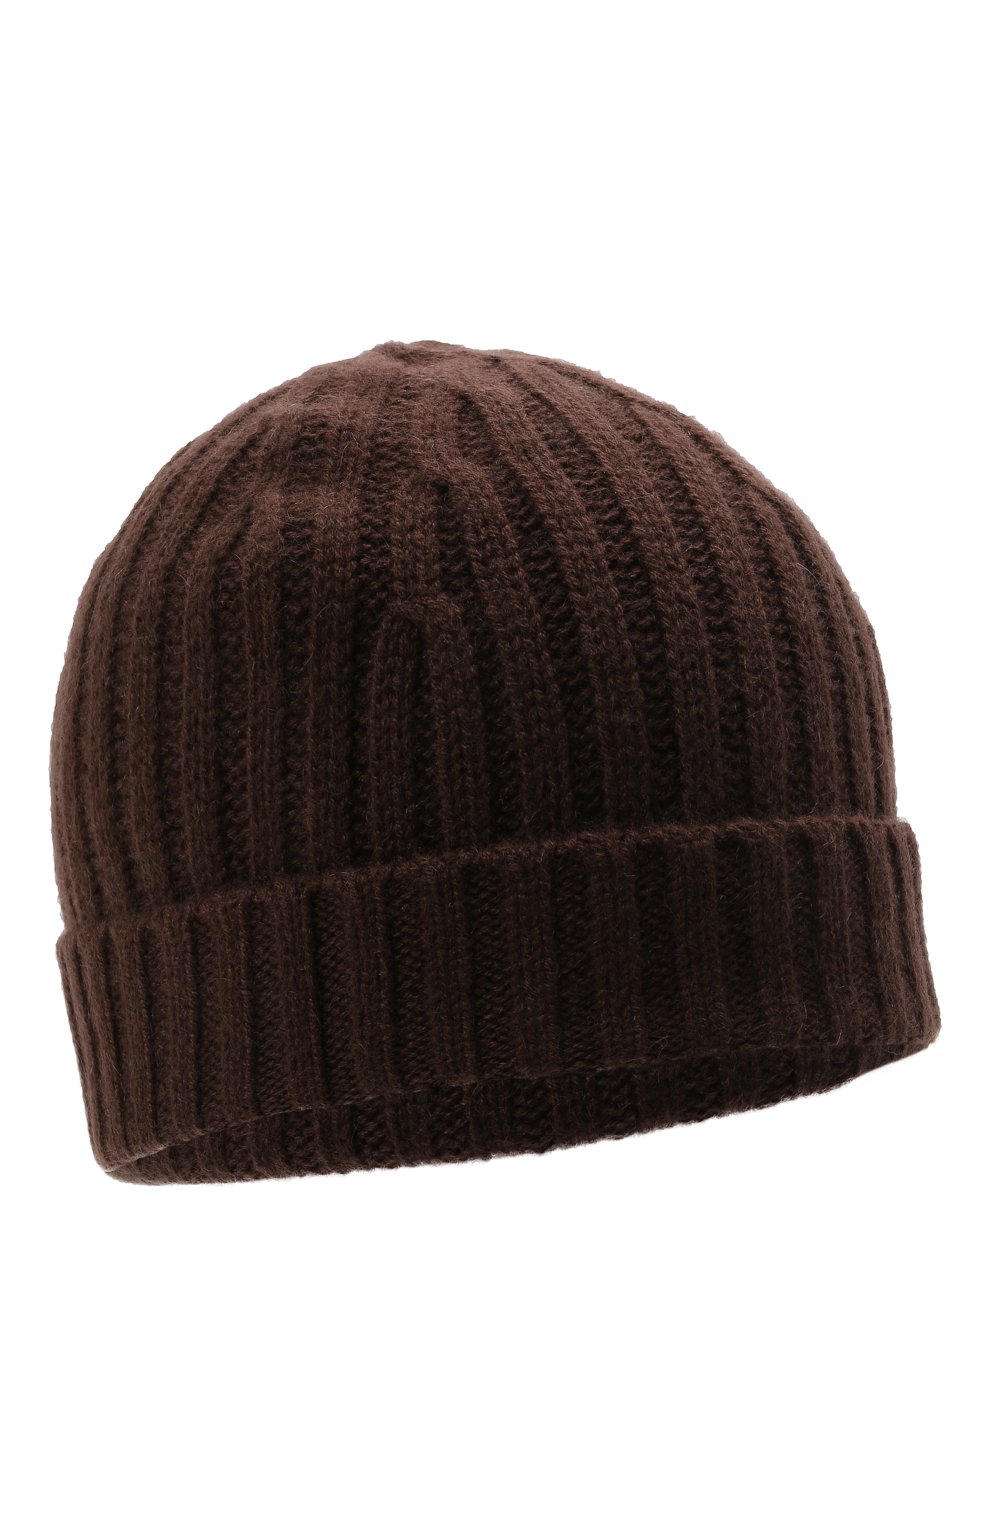 Мужская кашемировая шапка FTC темно-коричневого цвета, арт. 848-0500 | Фото 1 (Материал: Текстиль, Кашемир, Шерсть; Кросс-КТ: Трикотаж)